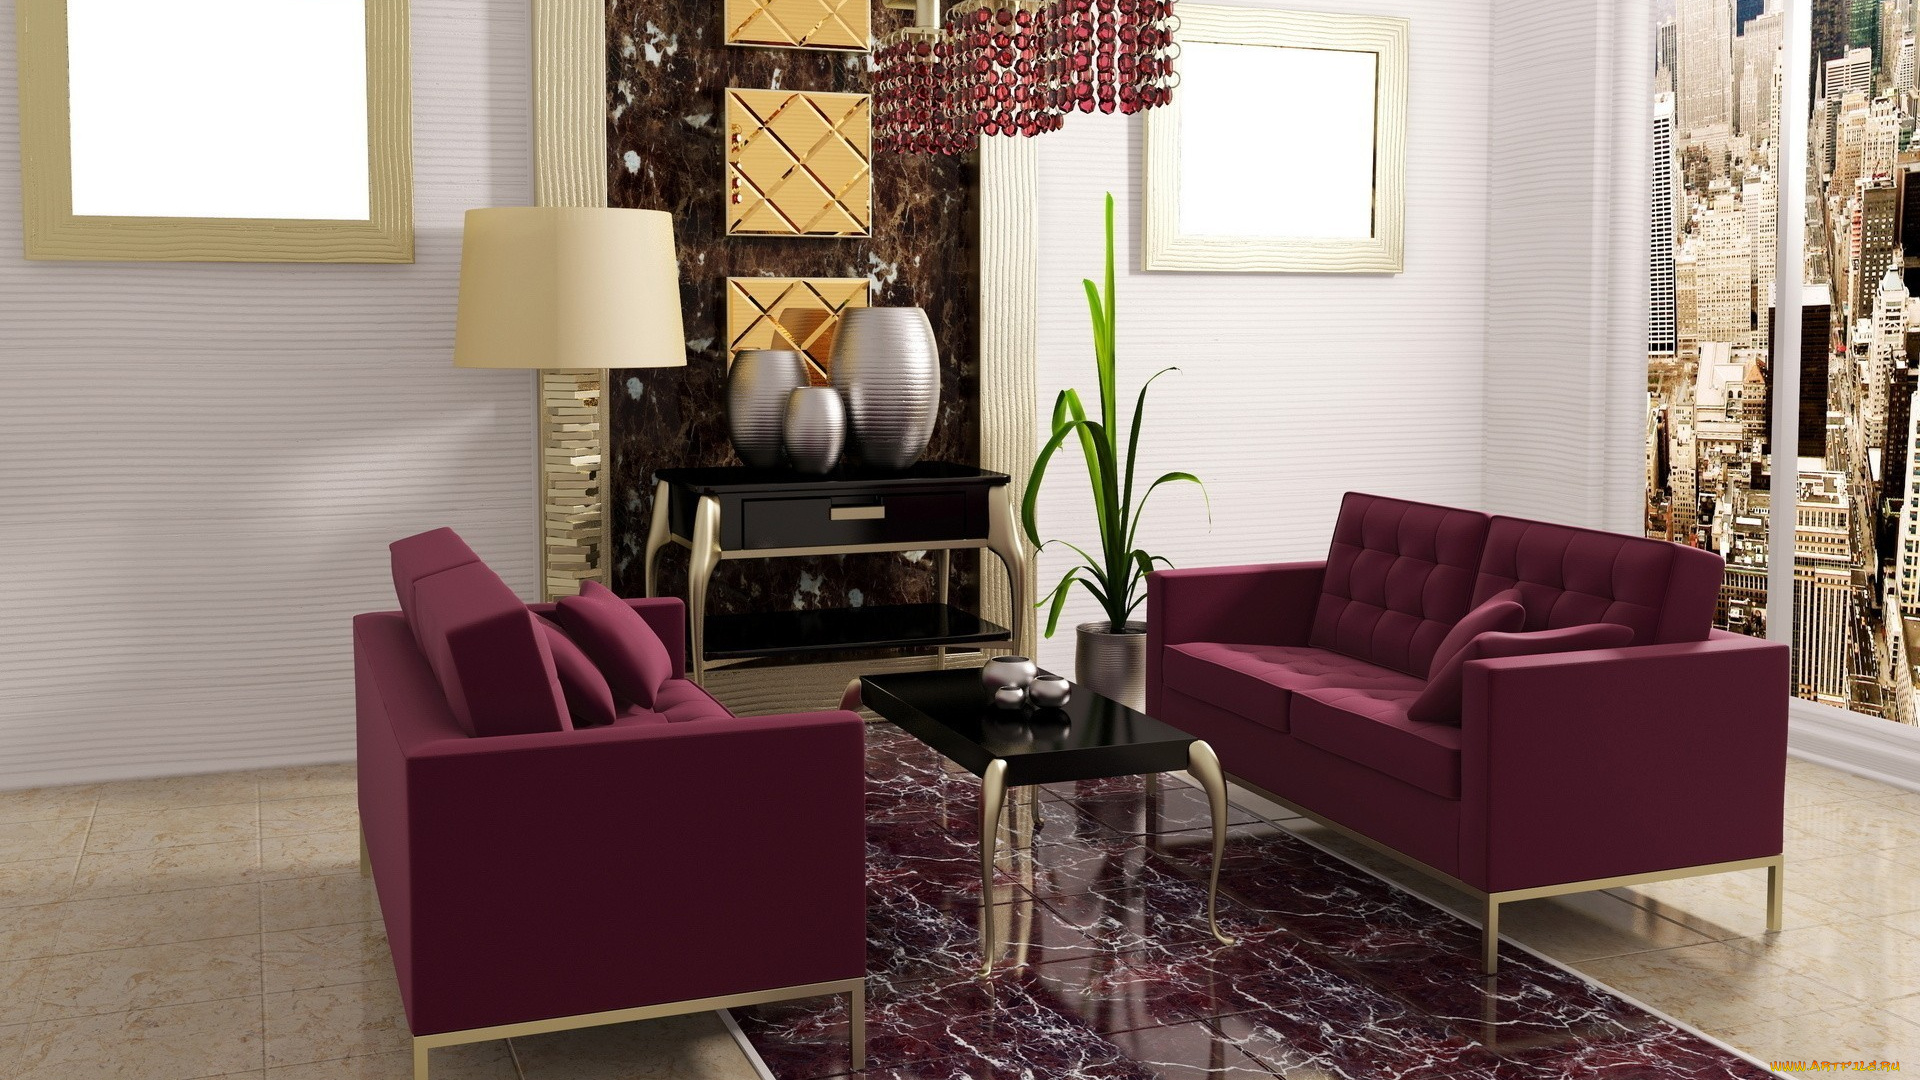 3д, графика, realism, реализм, комната, квартира, дизайн, стиль, фиолетовое, кресло